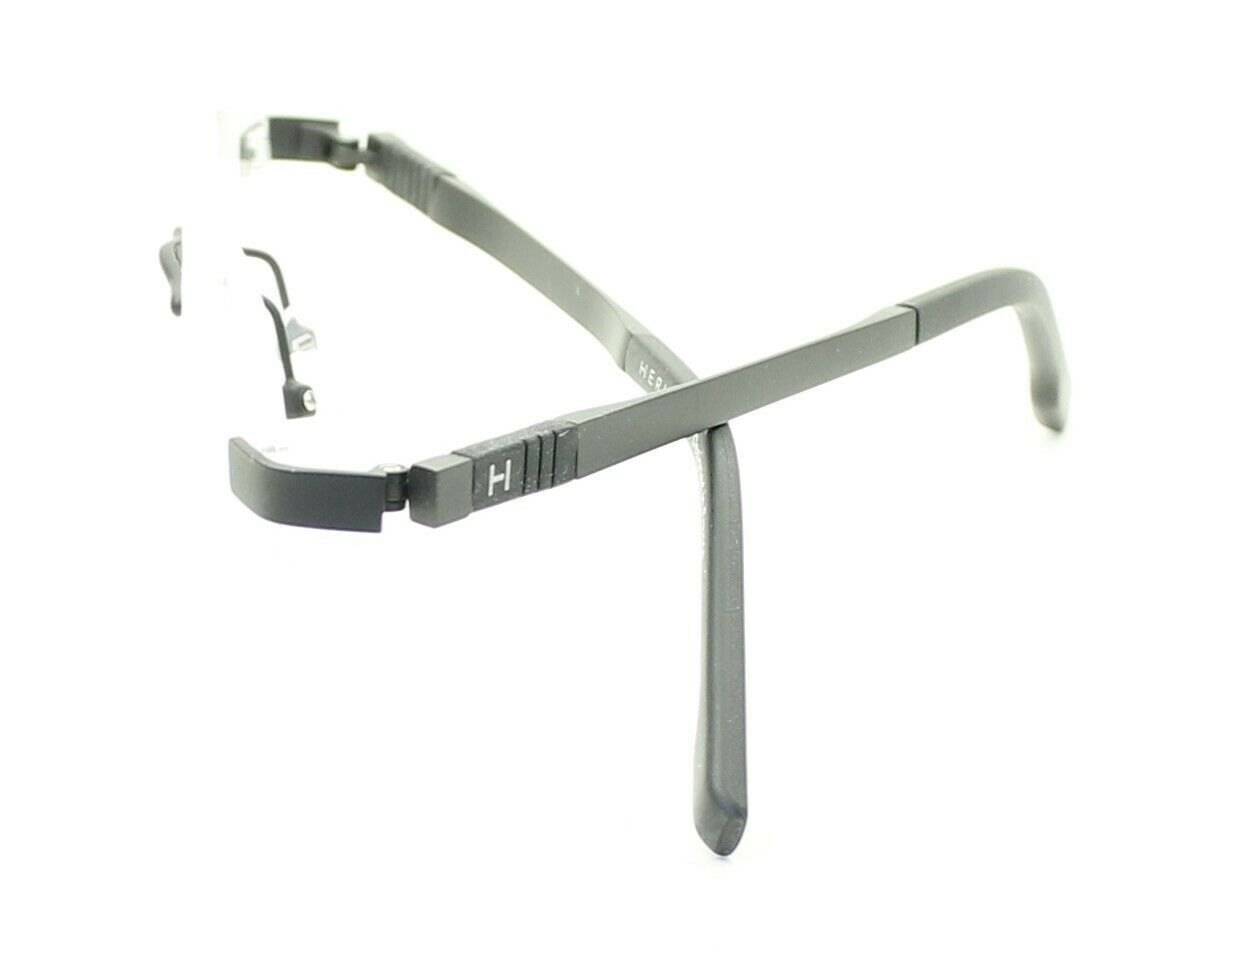 HERITAGE Iconic Luxury HEOM0020 BG Eyewear FRAMES Eyeglasses RX Optical Glasses